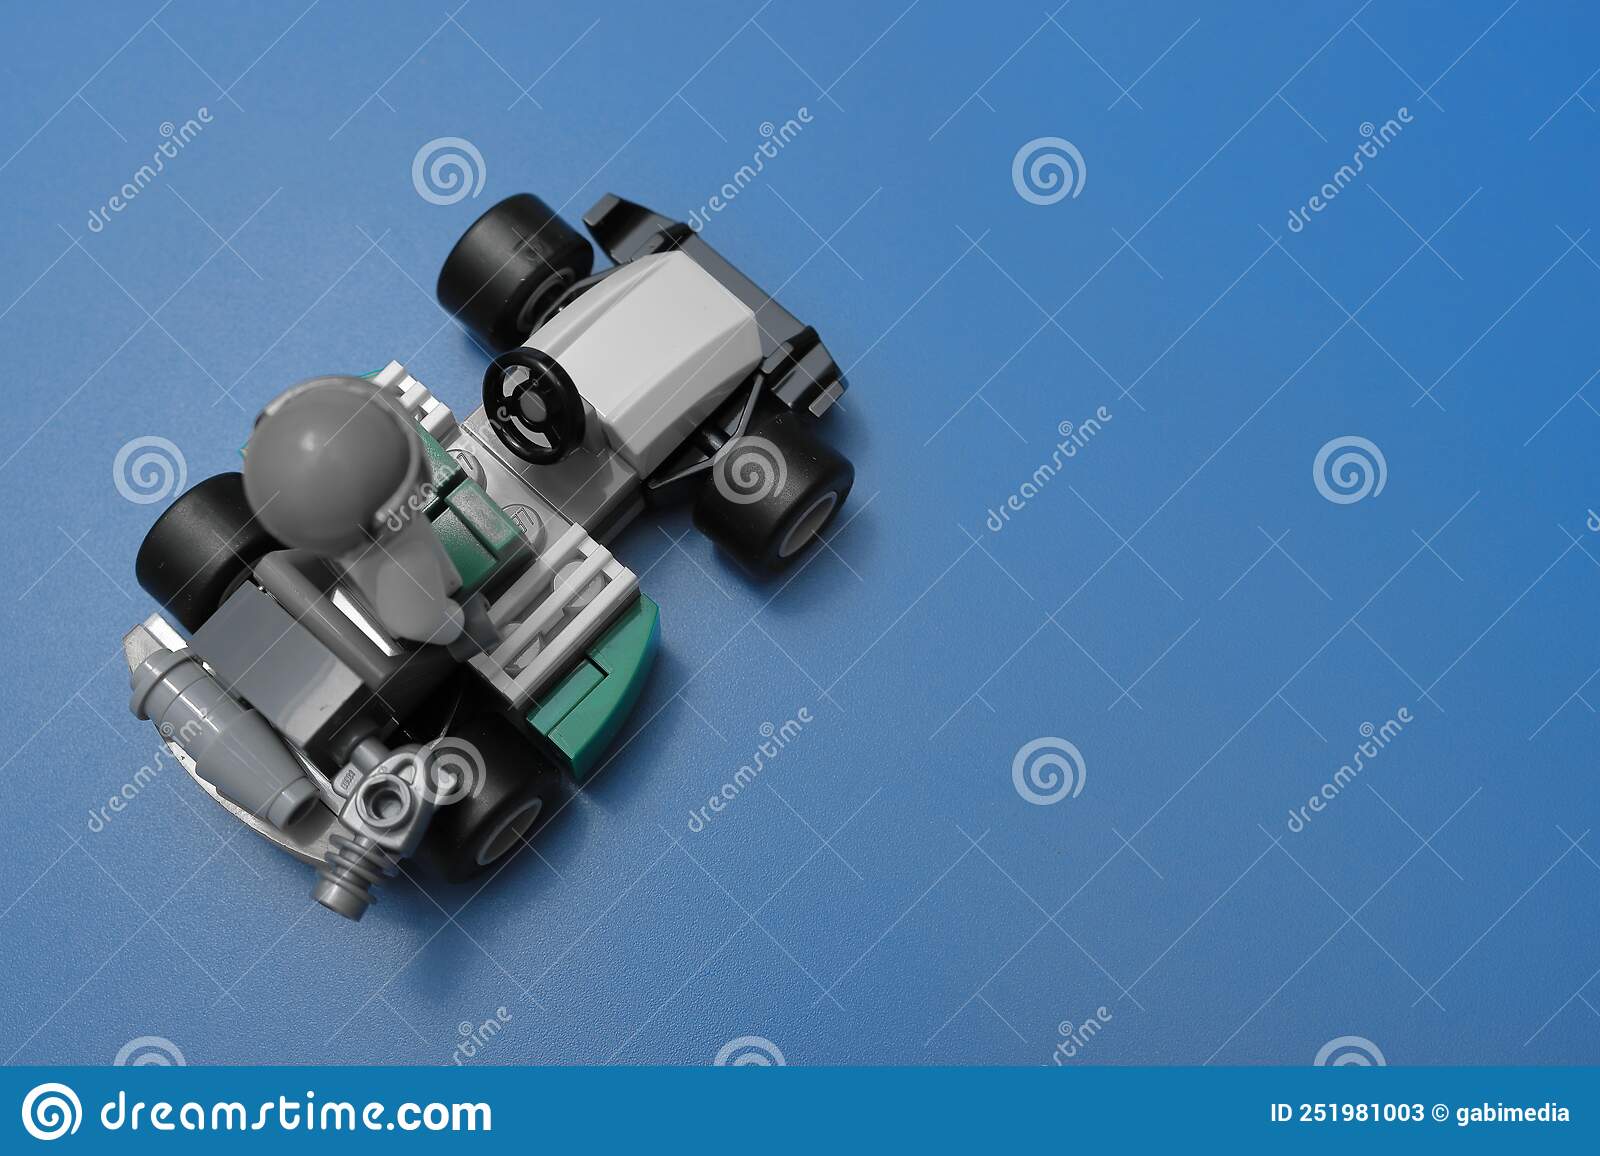 Mașină de curse cu minifigurină șofer LEGO, alb-negru